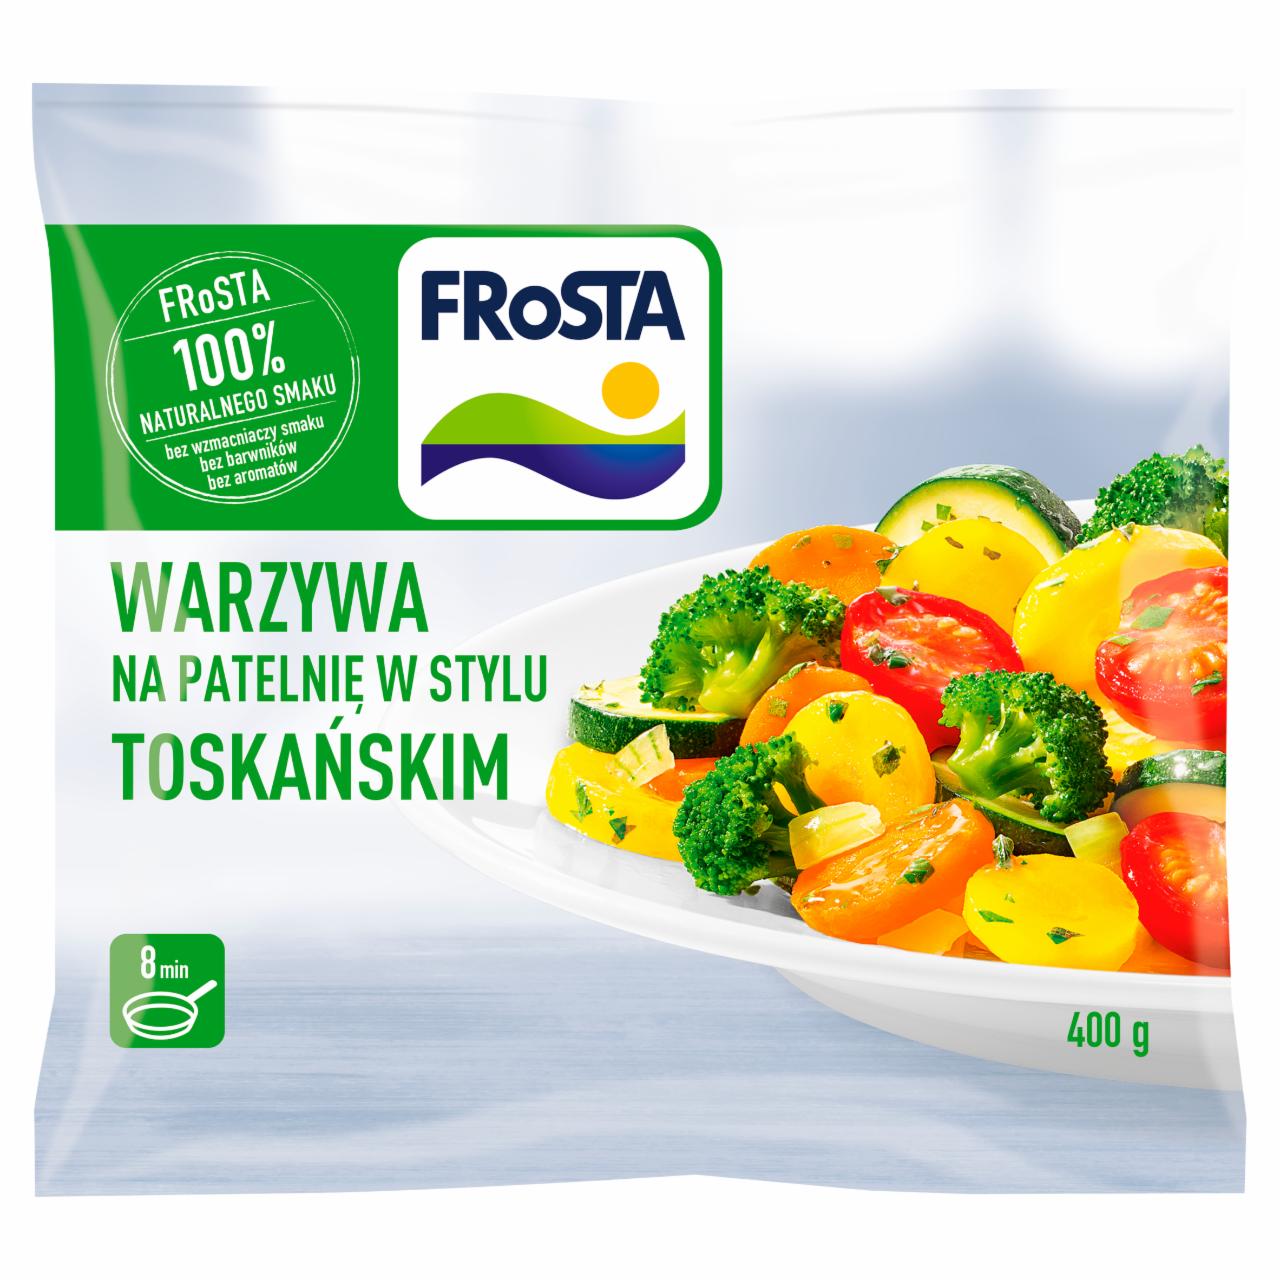 Zdjęcia - FRoSTA Warzywa na patelnię w stylu toskańskim 400 g